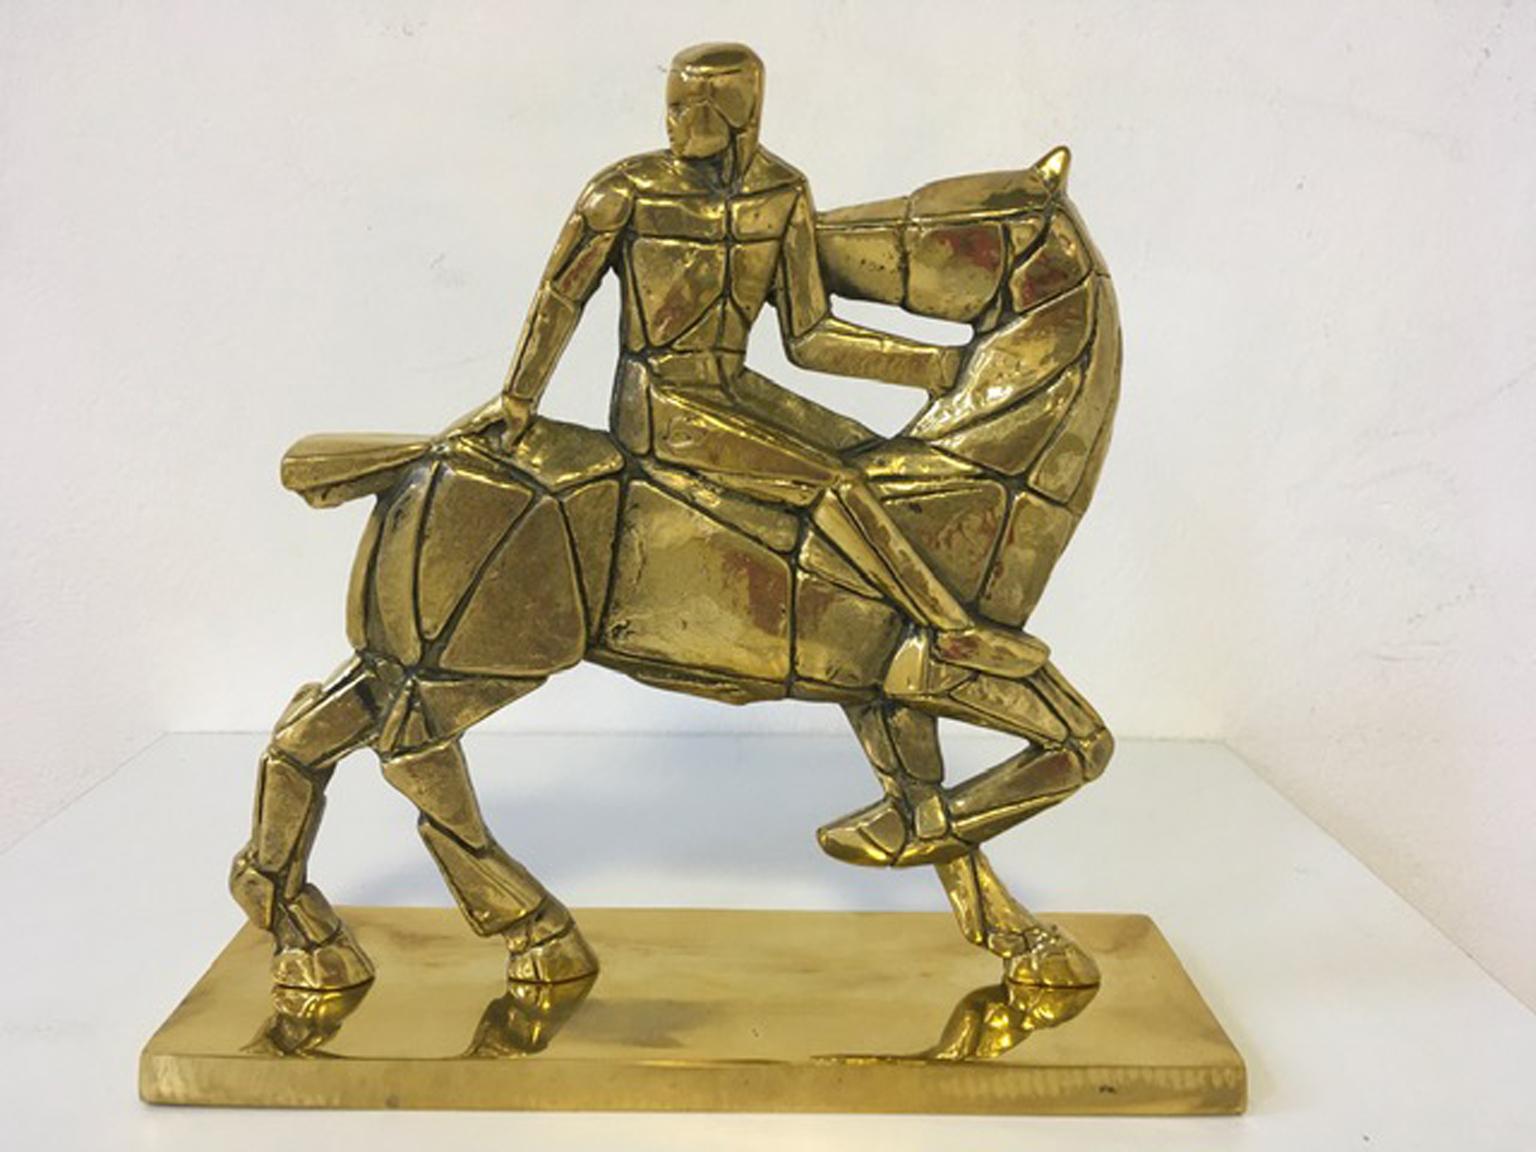 Italy 1980 Bronze Sculpture Cavallo e Cavaliere Mastrorocco Horse and Rider - Gold Abstract Sculpture by Antonio Mastrorocco